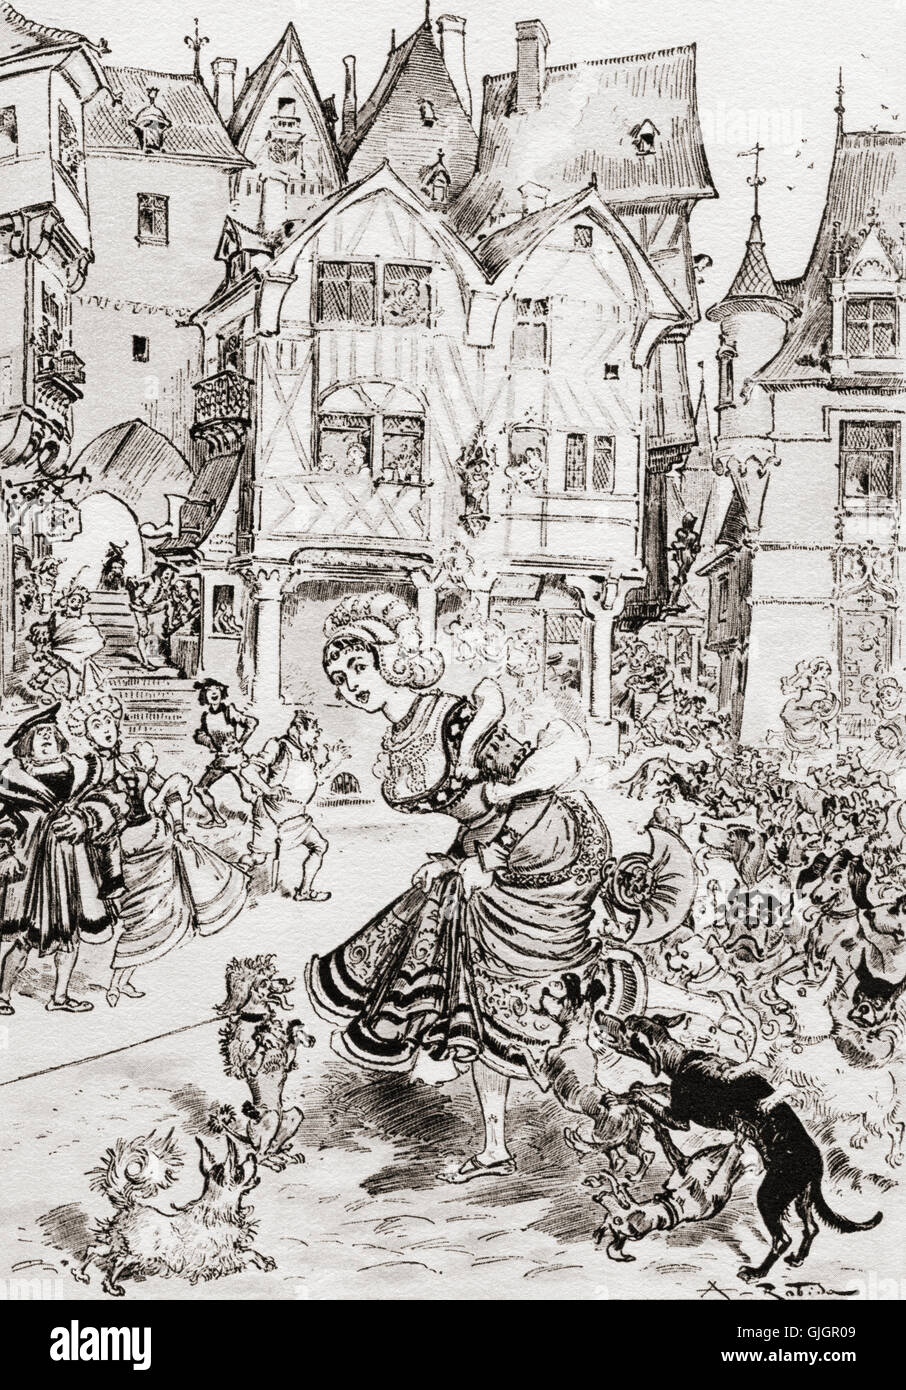 Mesaventure d ' une Haute-Dame de Paris oder das Unglück eine hohe Dame von Paris.  Nach der Abbildung von Albert Robida Gargantua und Pantagruel von François Rabelais. Stockfoto